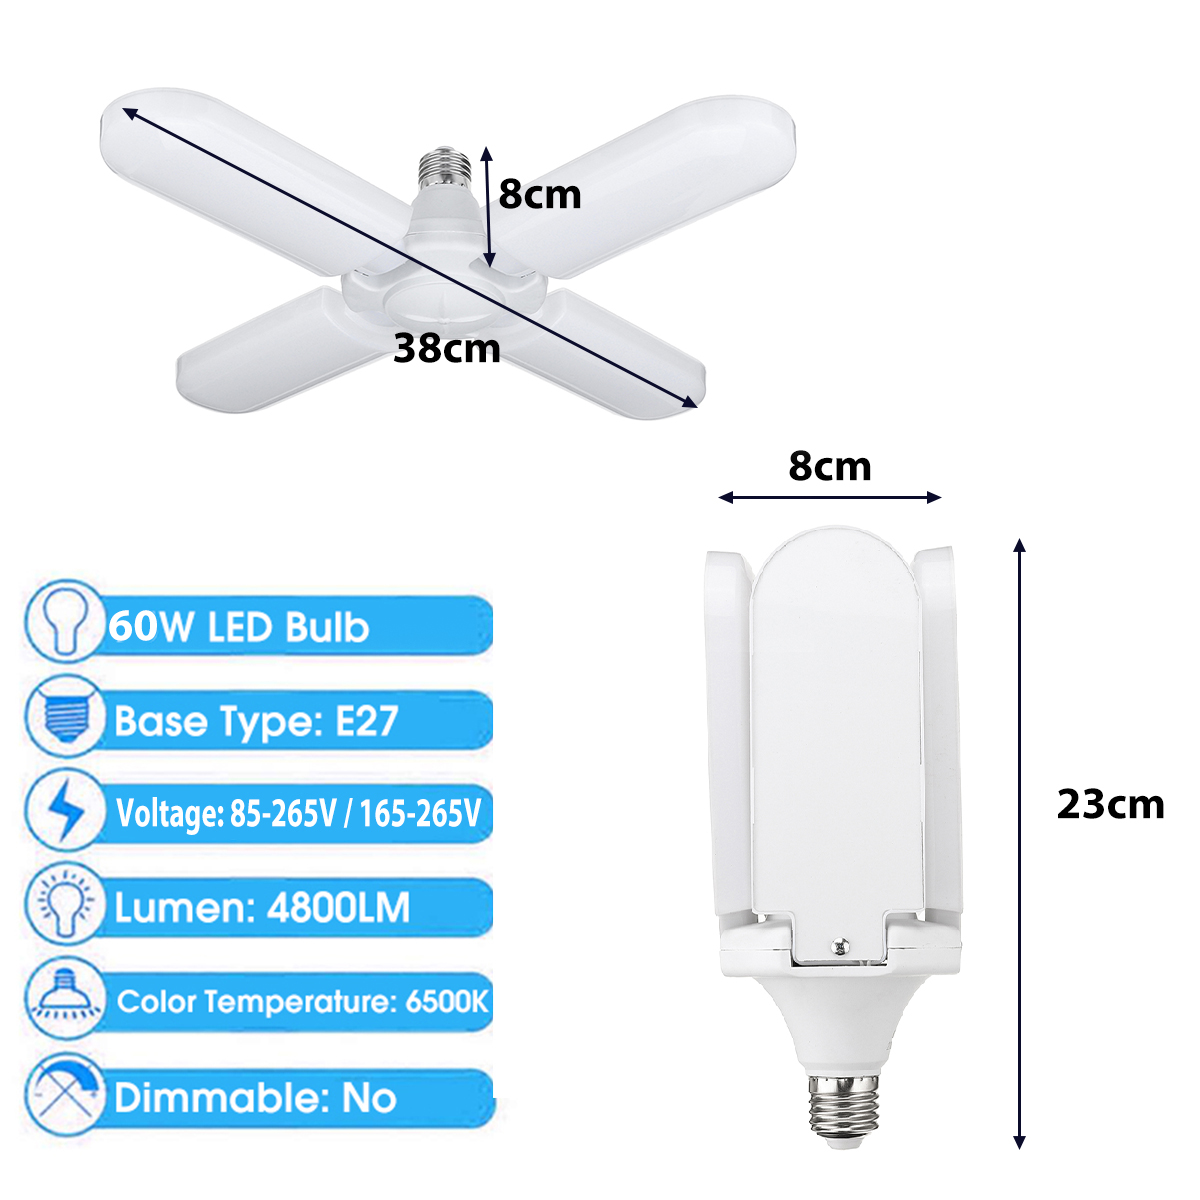 60W-E27-4800LM-LED-Garage-Light-Bulb-Deformable-Ceiling-Fixture-Workshop-Lamp-AC85-265V-AC165-265V-1634710-4